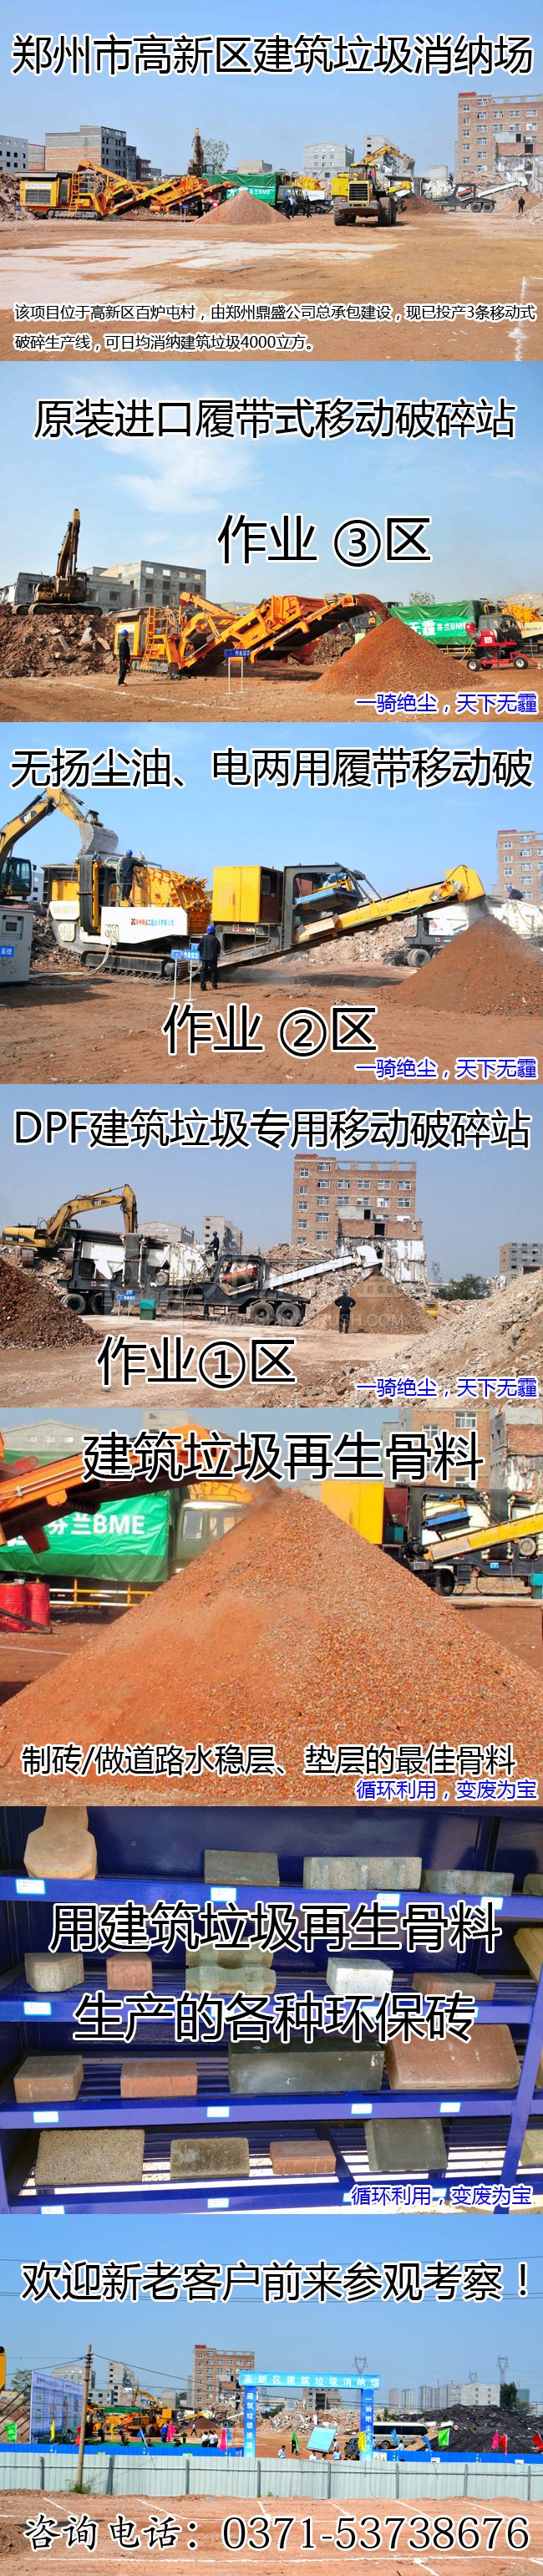 郑州建筑垃圾处理